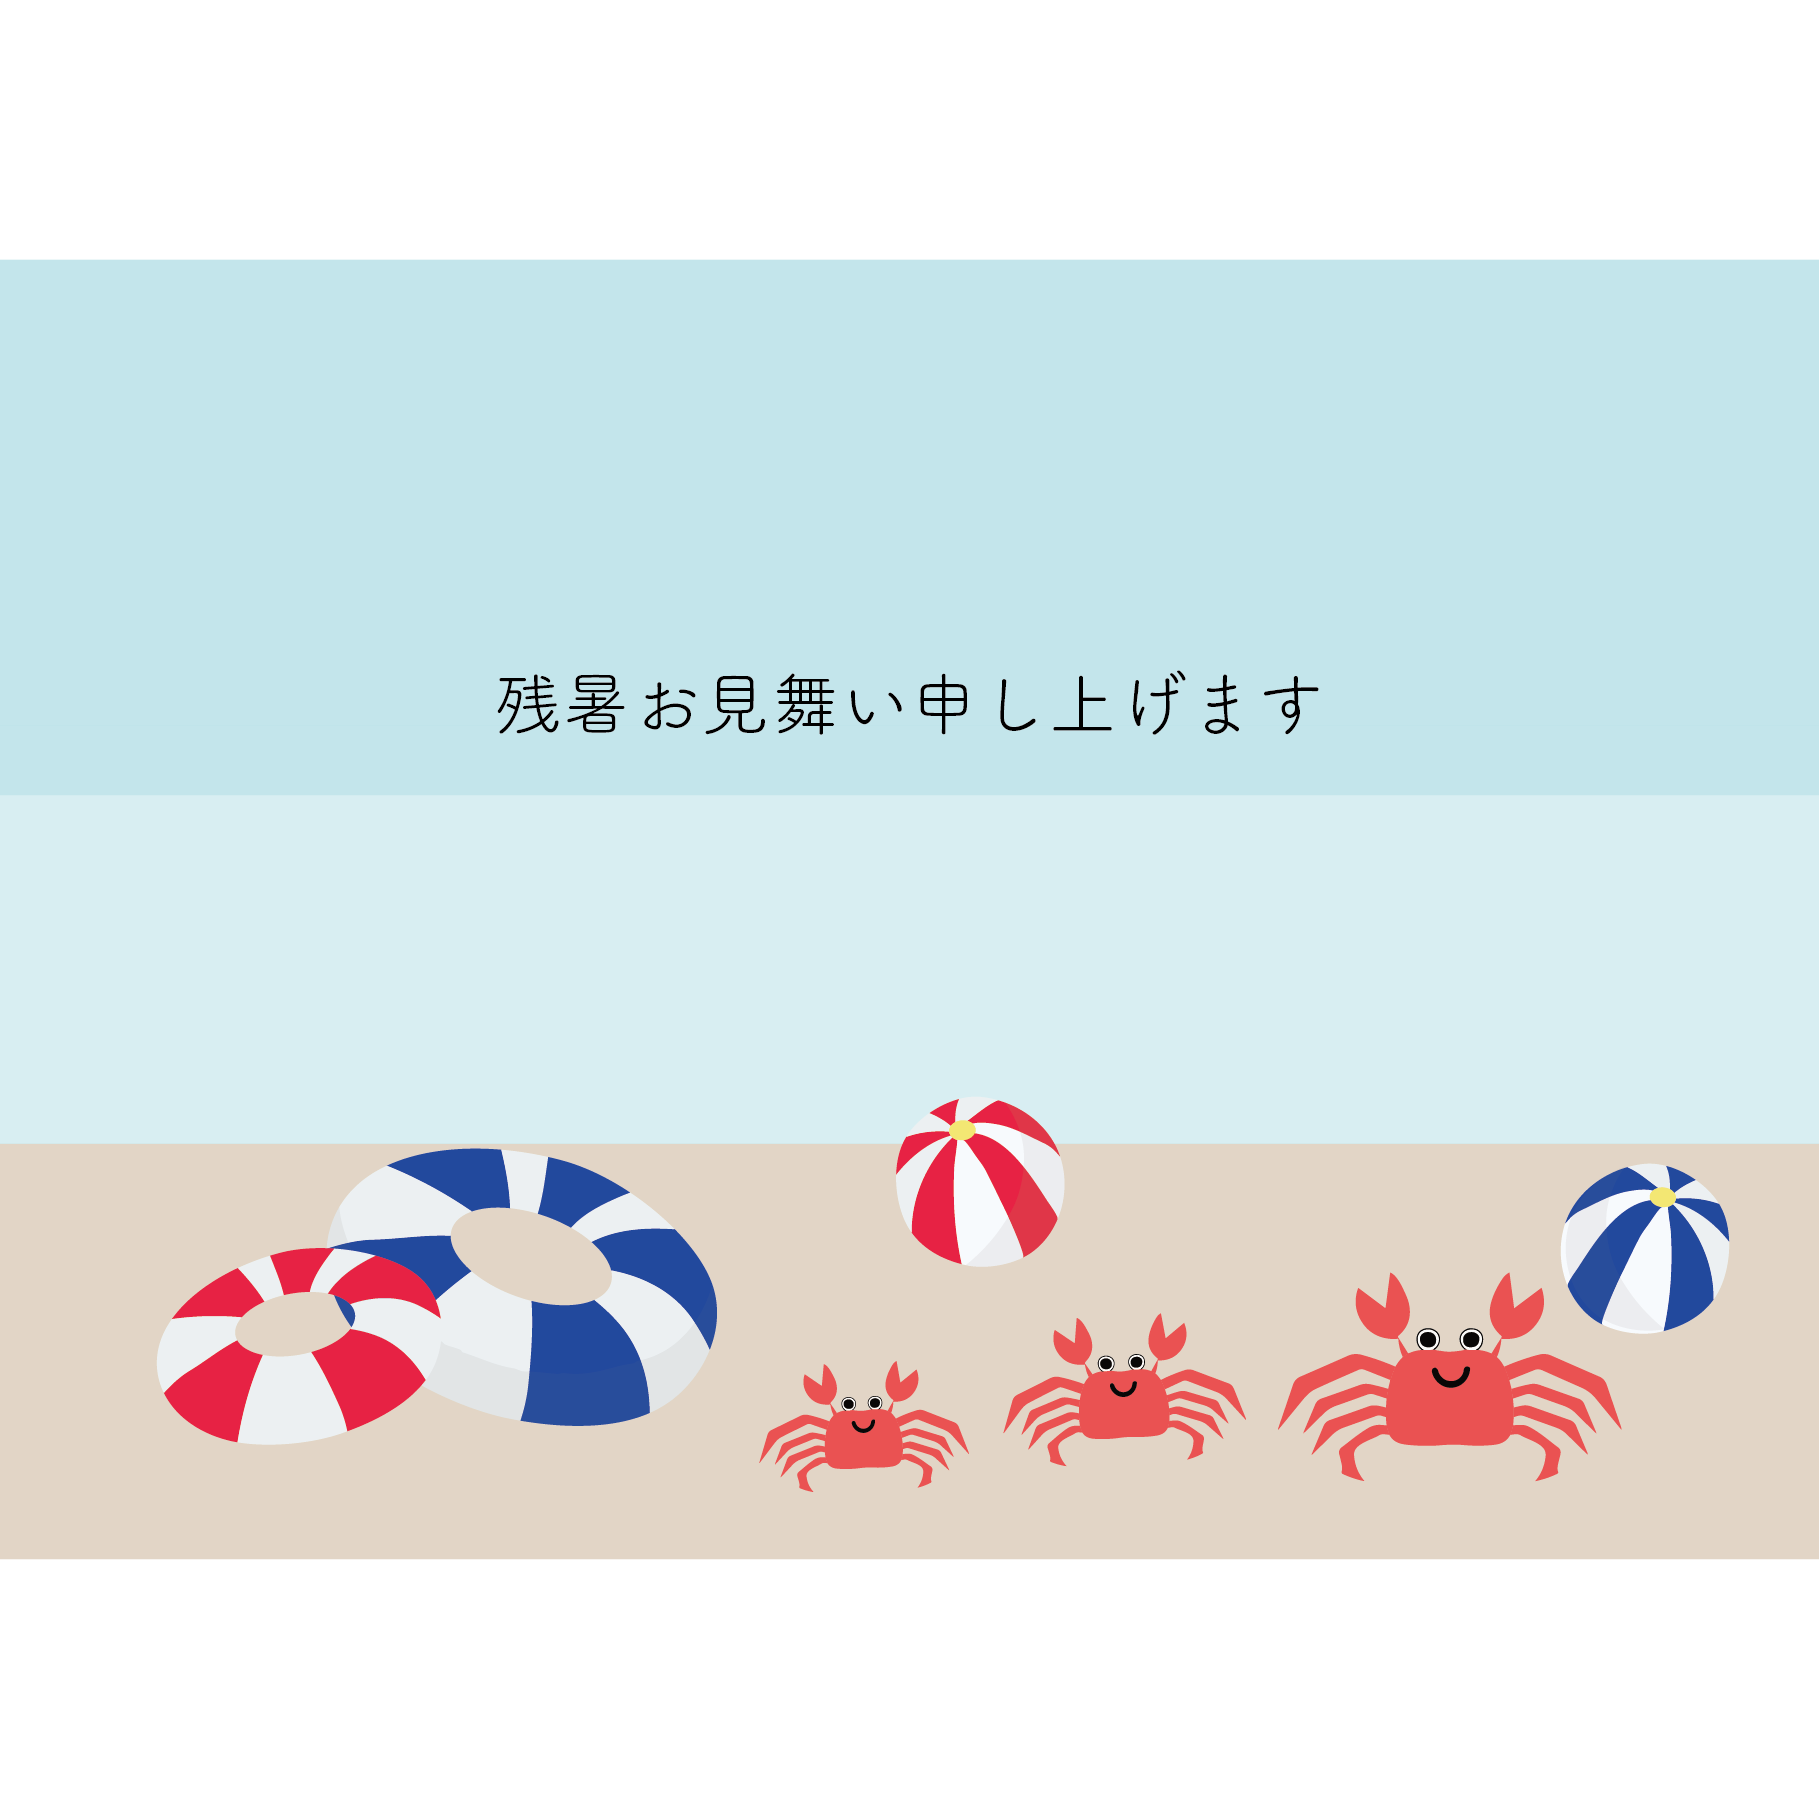 【残暑見舞い・横】カニとビーチボールのグリーティング  イラスト